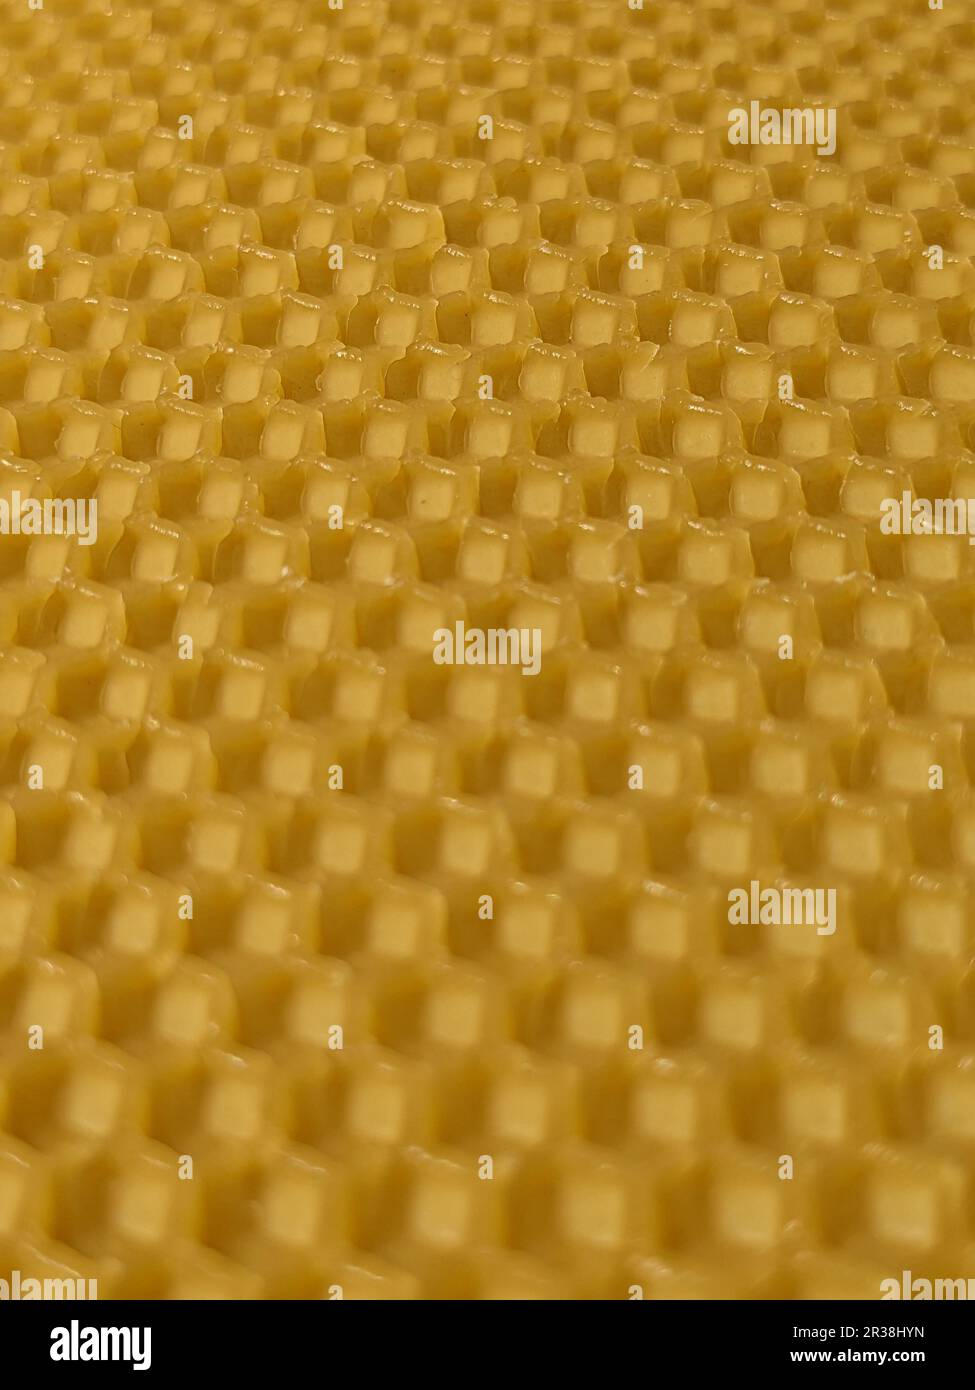 Sfondo astratto o consistenza di cera gialla a nido d'ape.apicoltura, produzione di cera biologica,Europa,repubblica Ceca Foto Stock